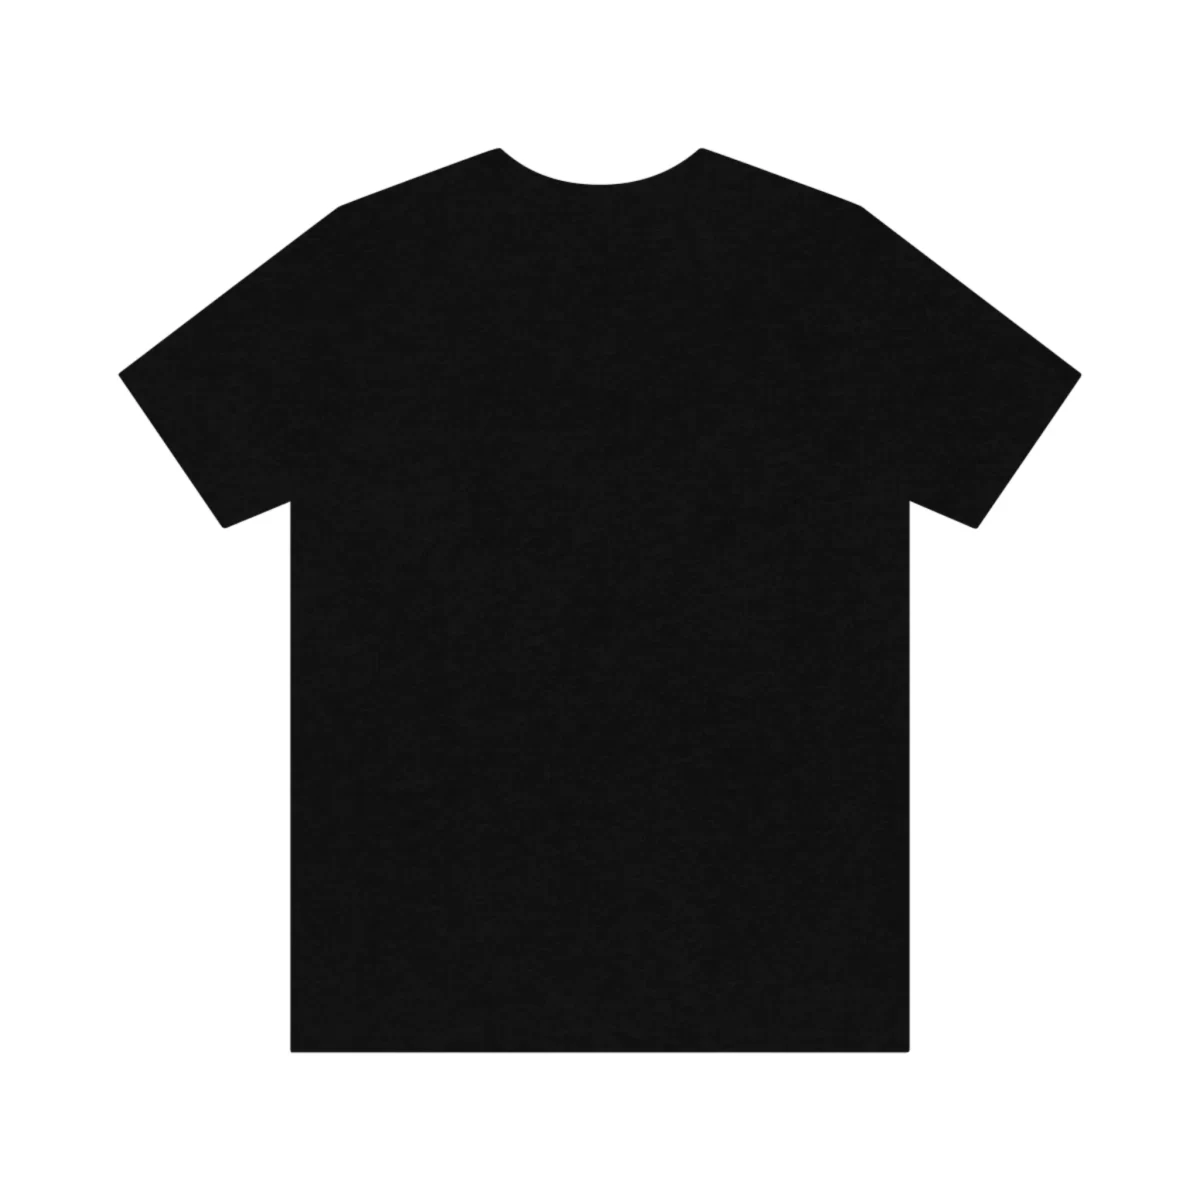 Unisex T Shirt Awesome Black Back